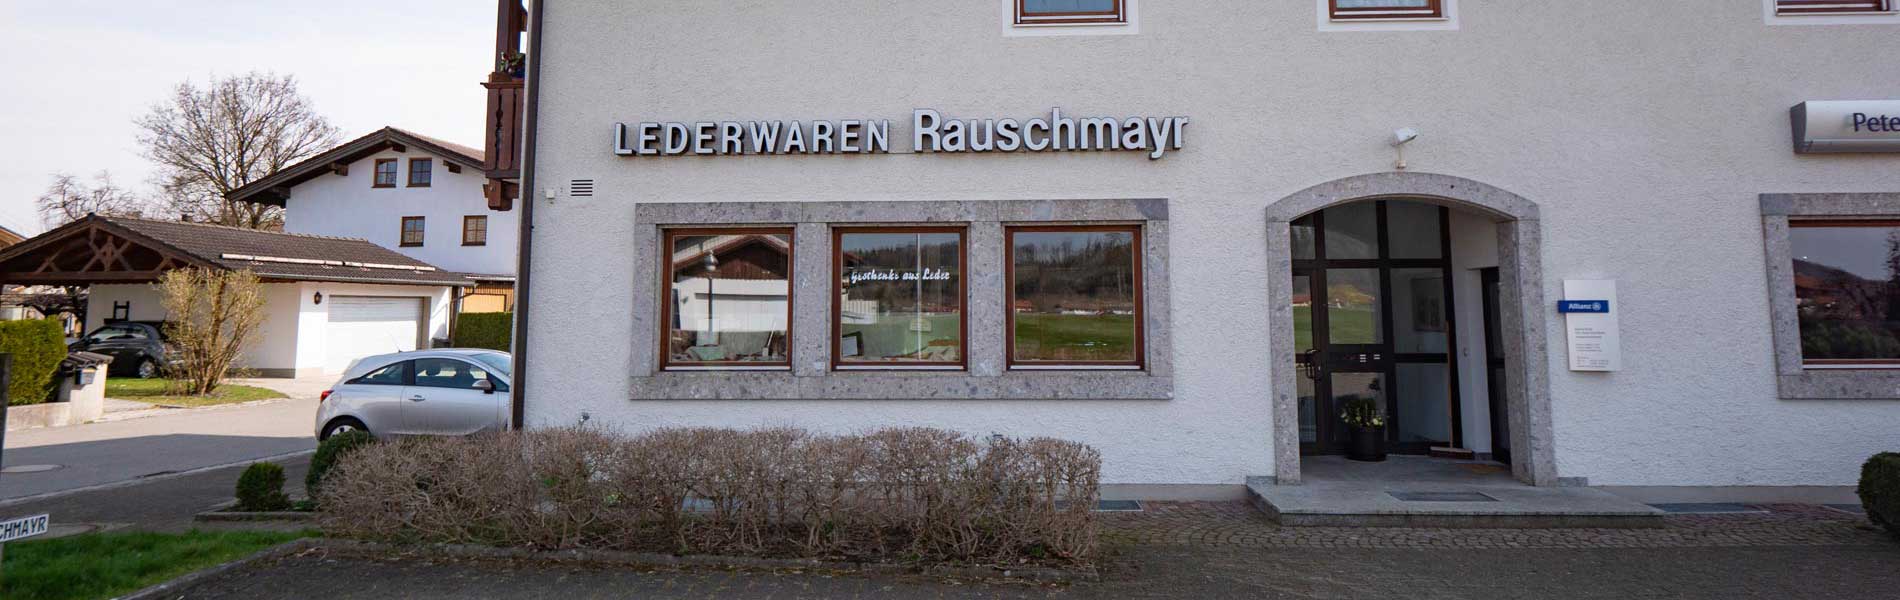 Lederwaren Rauschmayr